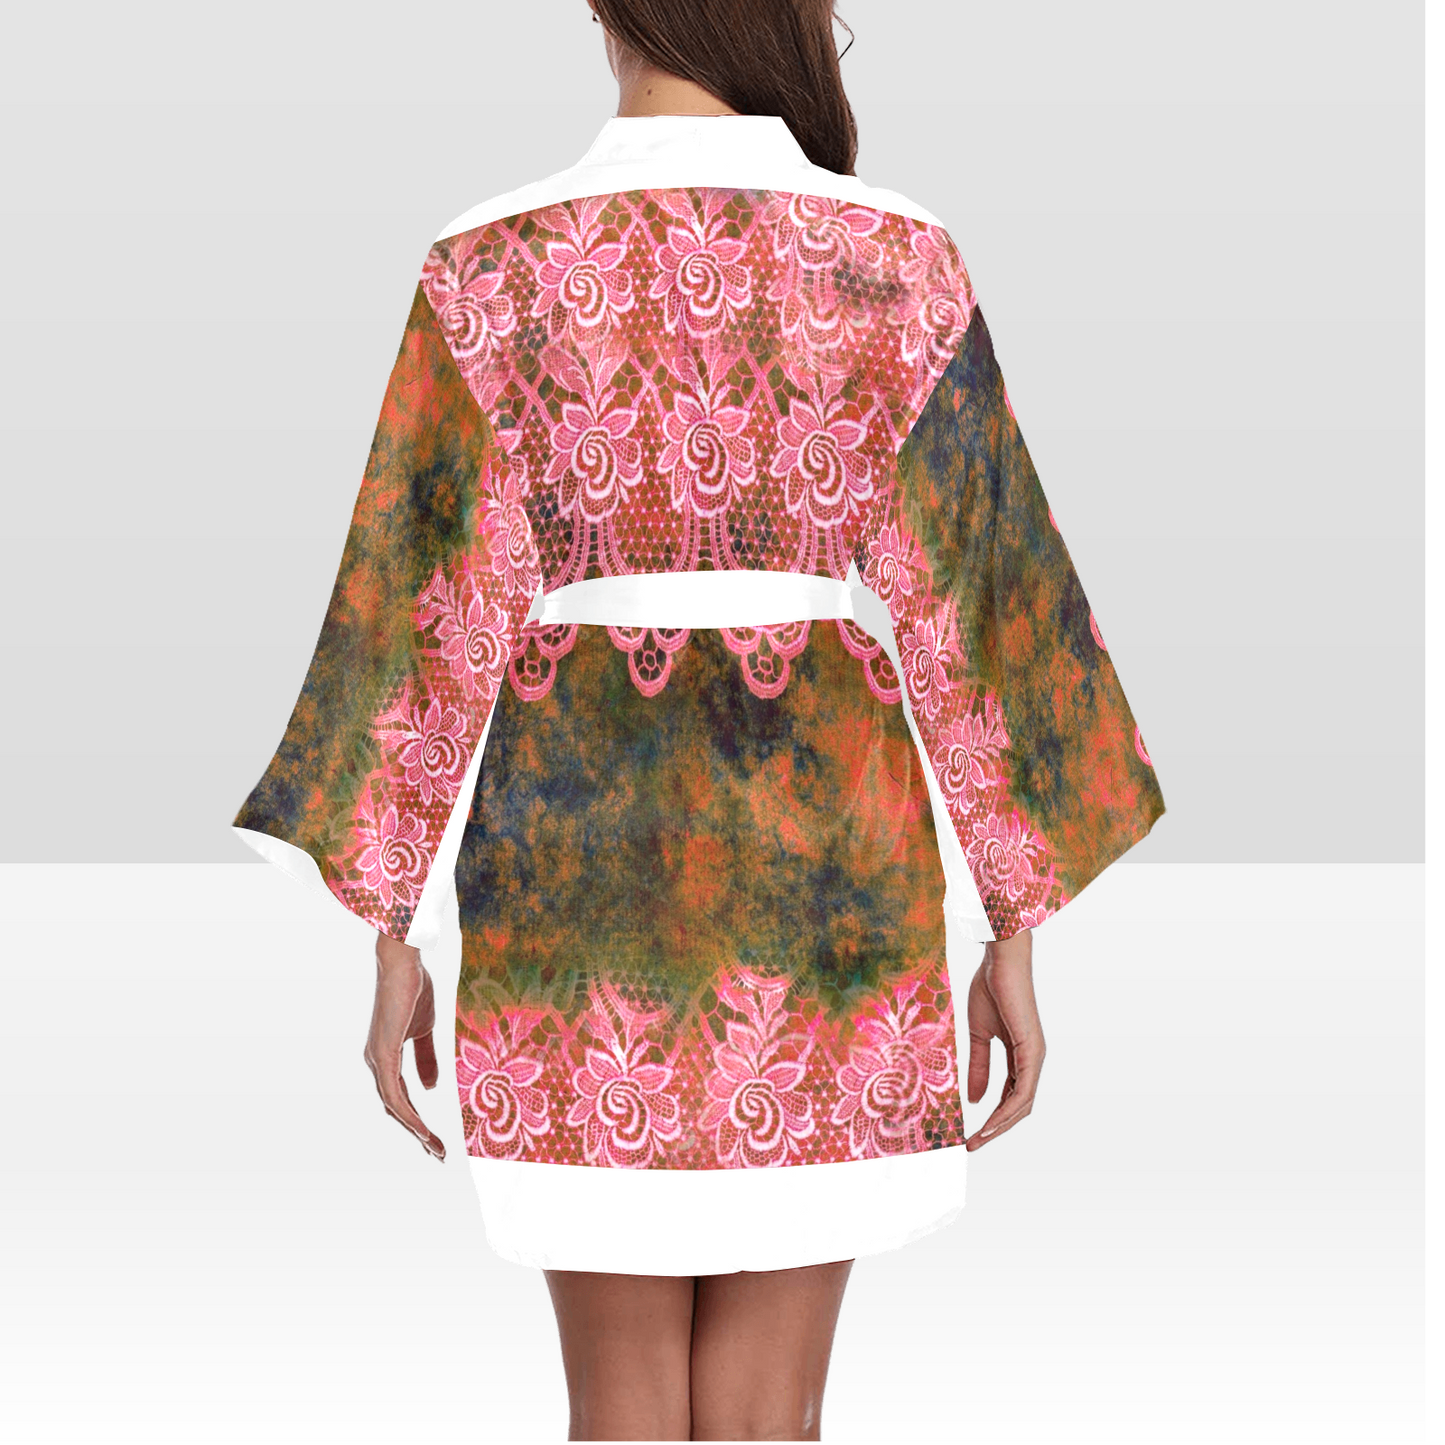 Victorian Lace Kimono Robe, Black or White Trim, Sizes XS to 2XL, Design 32